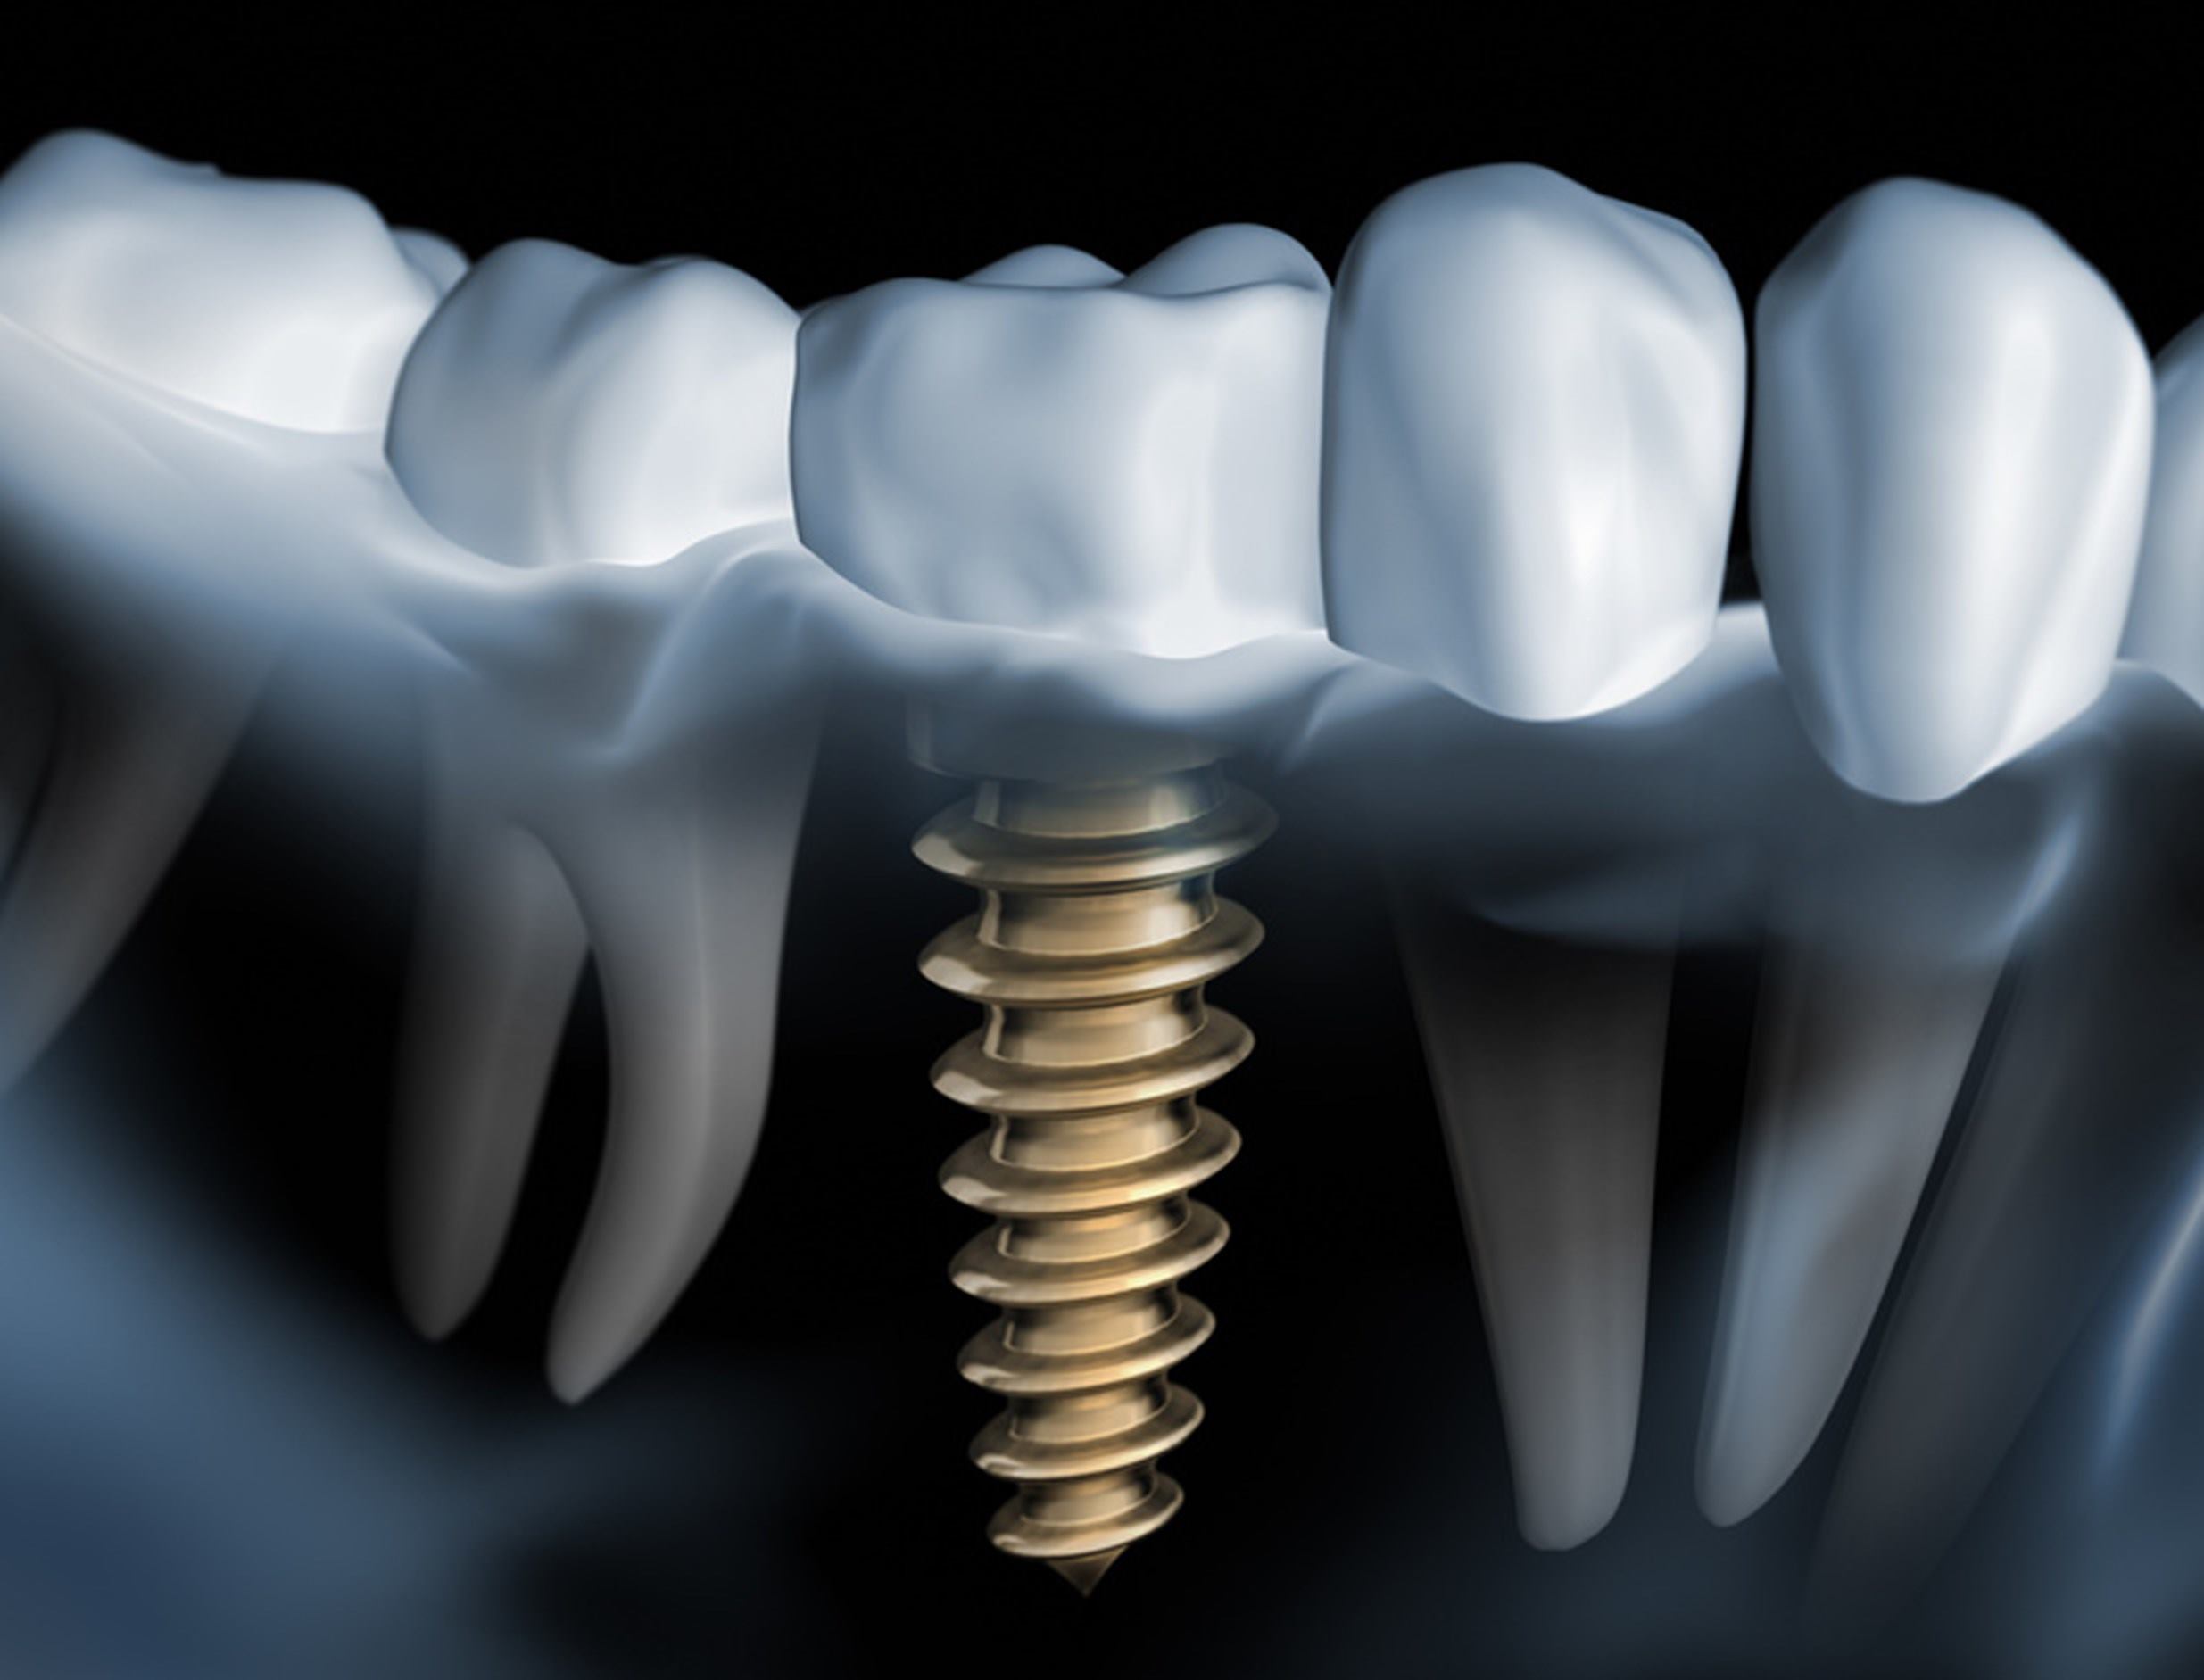 radiografia-boca-dientes-raiz-implante-dental-tornillo